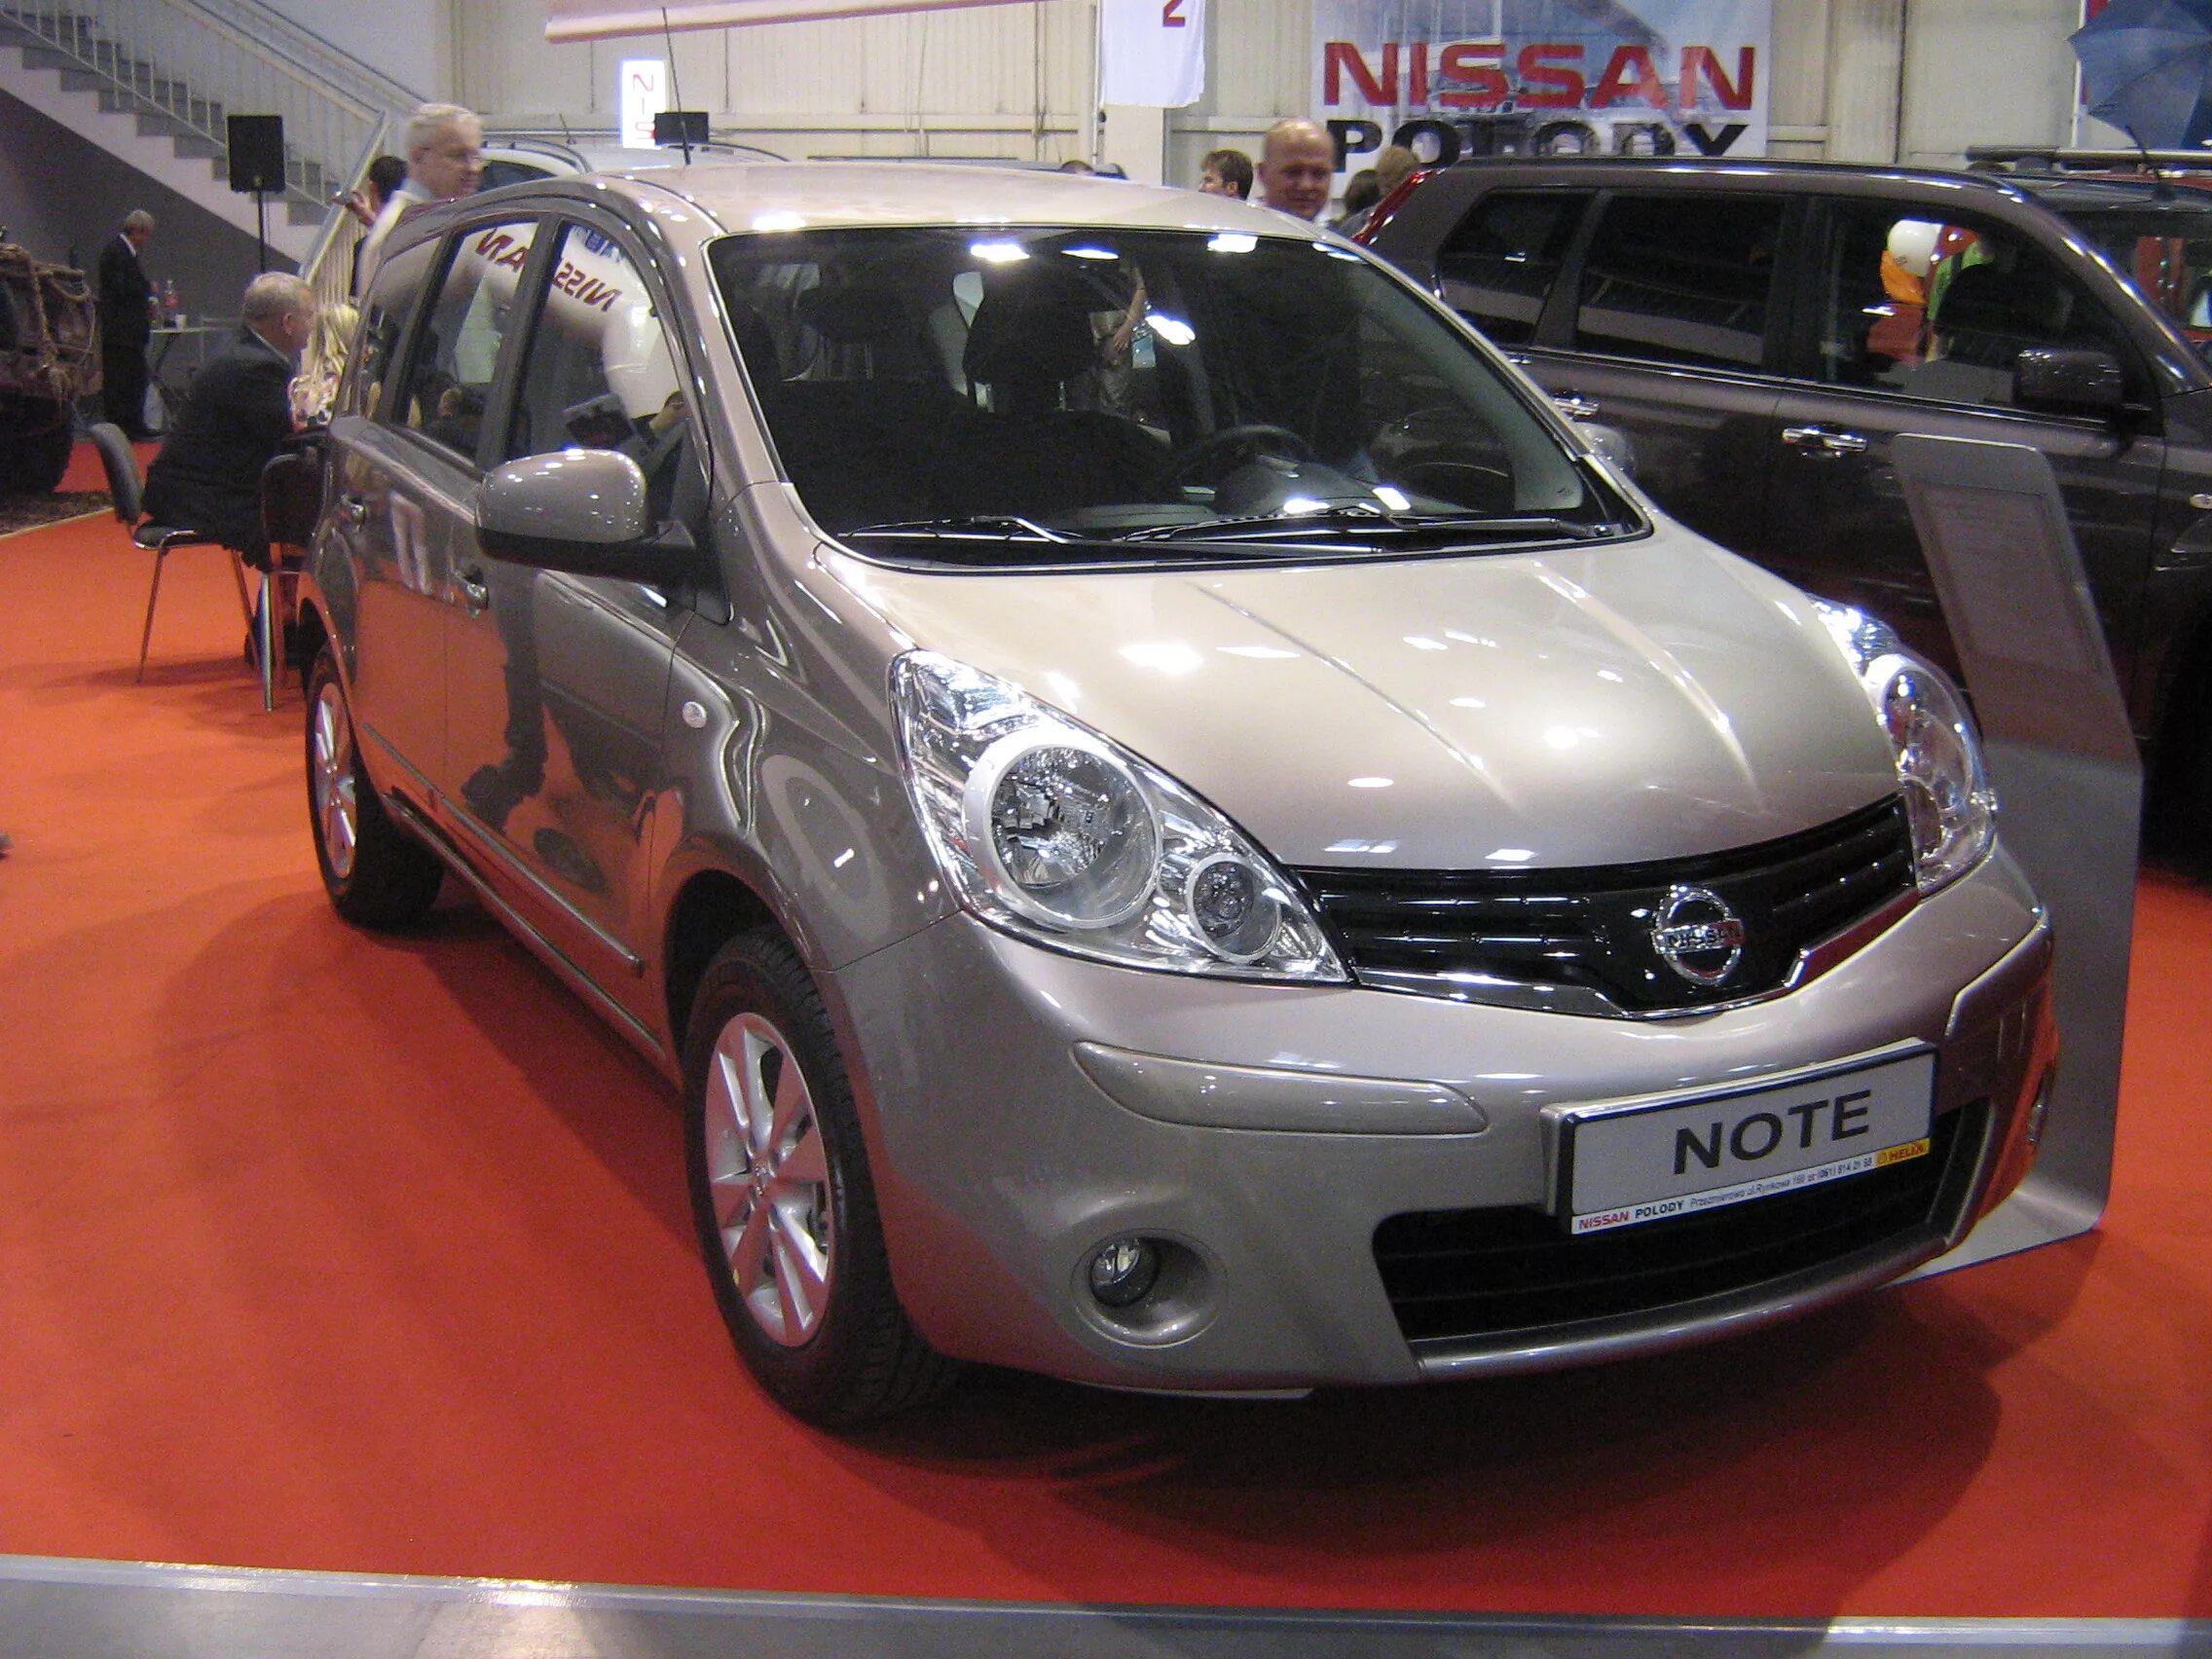 Nissan Note 2011 1.6. Nissan Note 2009. Nissan Note 1.6 2010. Nissan Note e11 2010. Ниссан ноут хабаровске